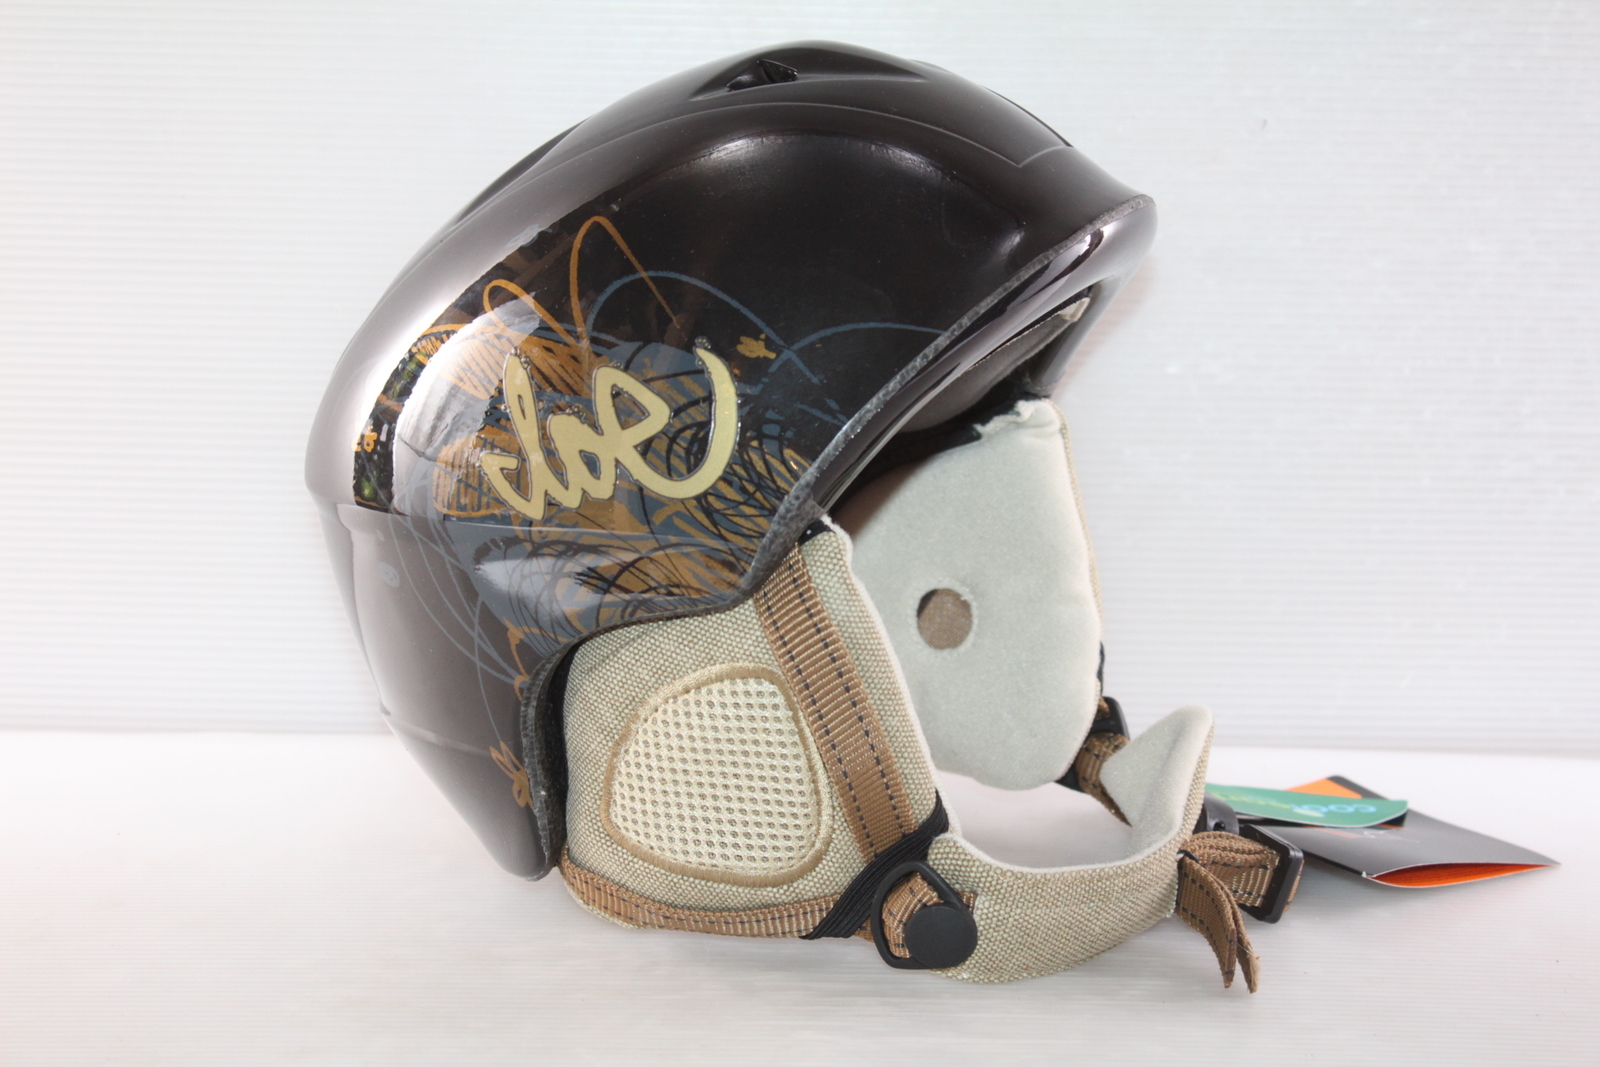 Dámská lyžařská helma Head Cloe vel. 52 cm